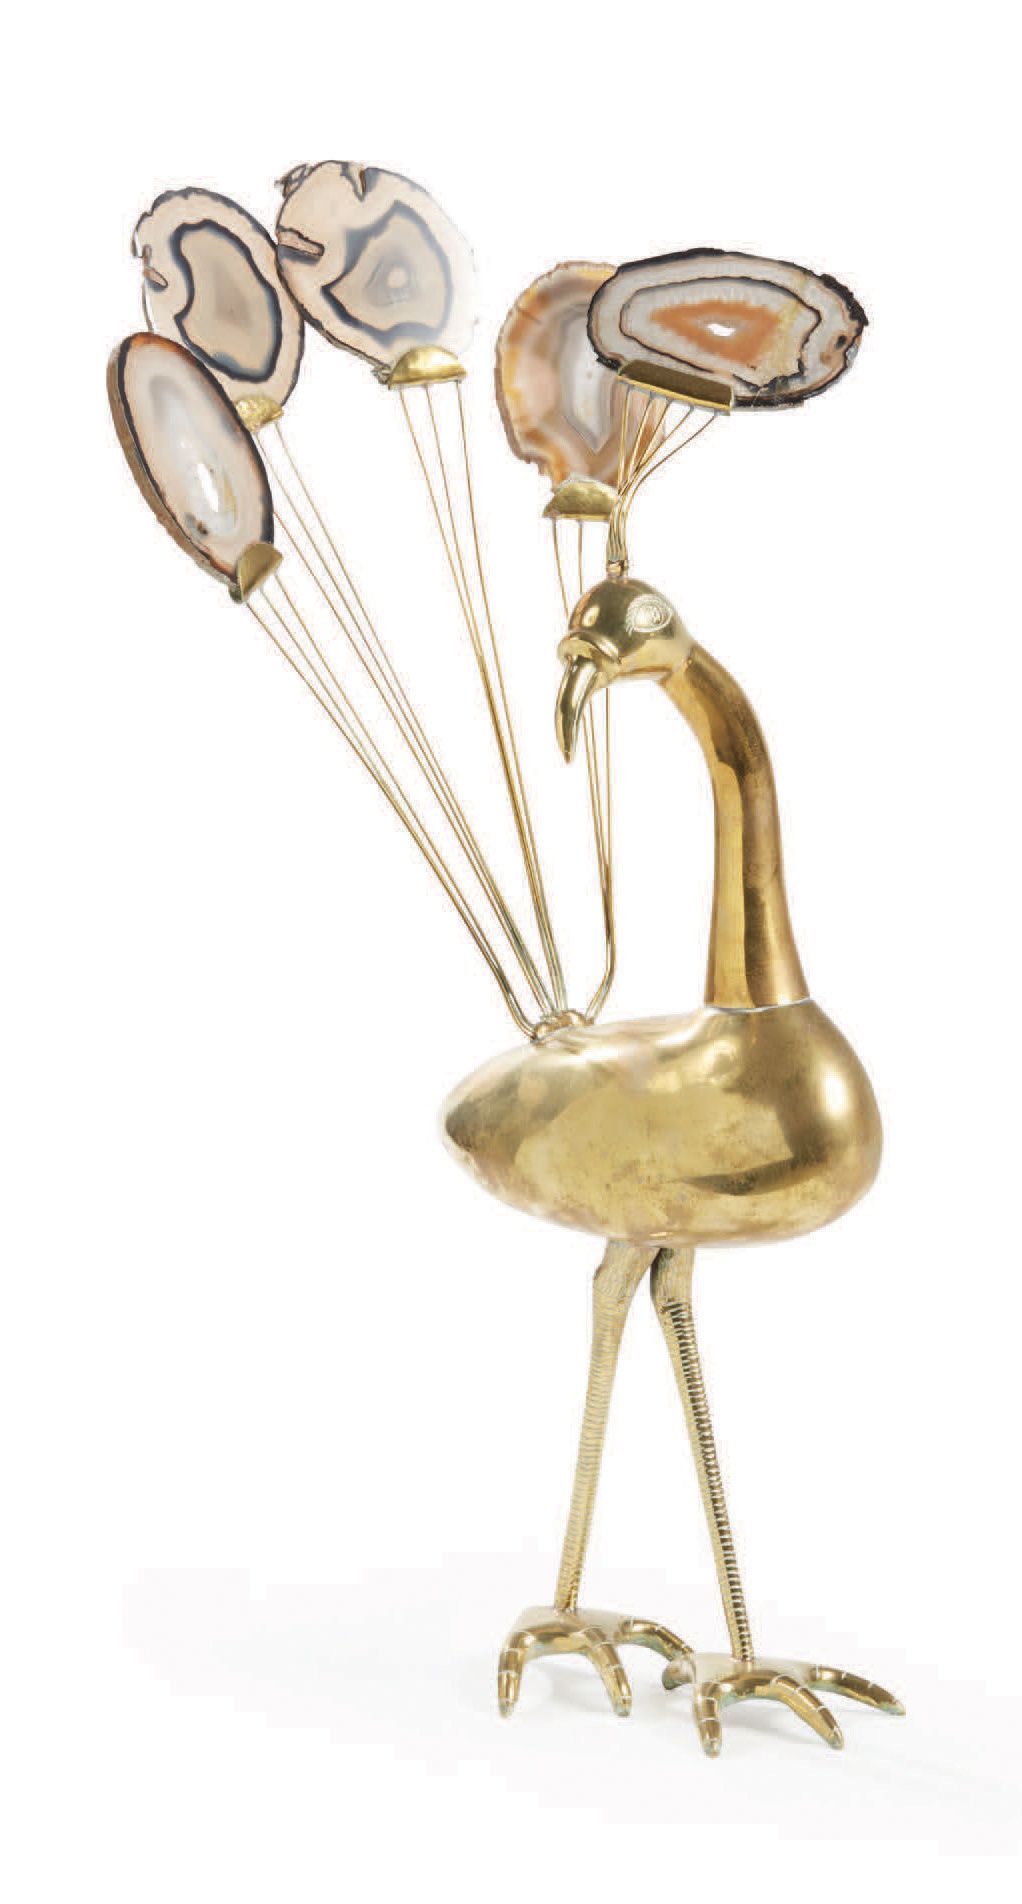 ADDIS SHERLEY (XXE) 
Vergoldetes Metall und Achat Skulptur eines Pfaus
Signiert
&hellip;